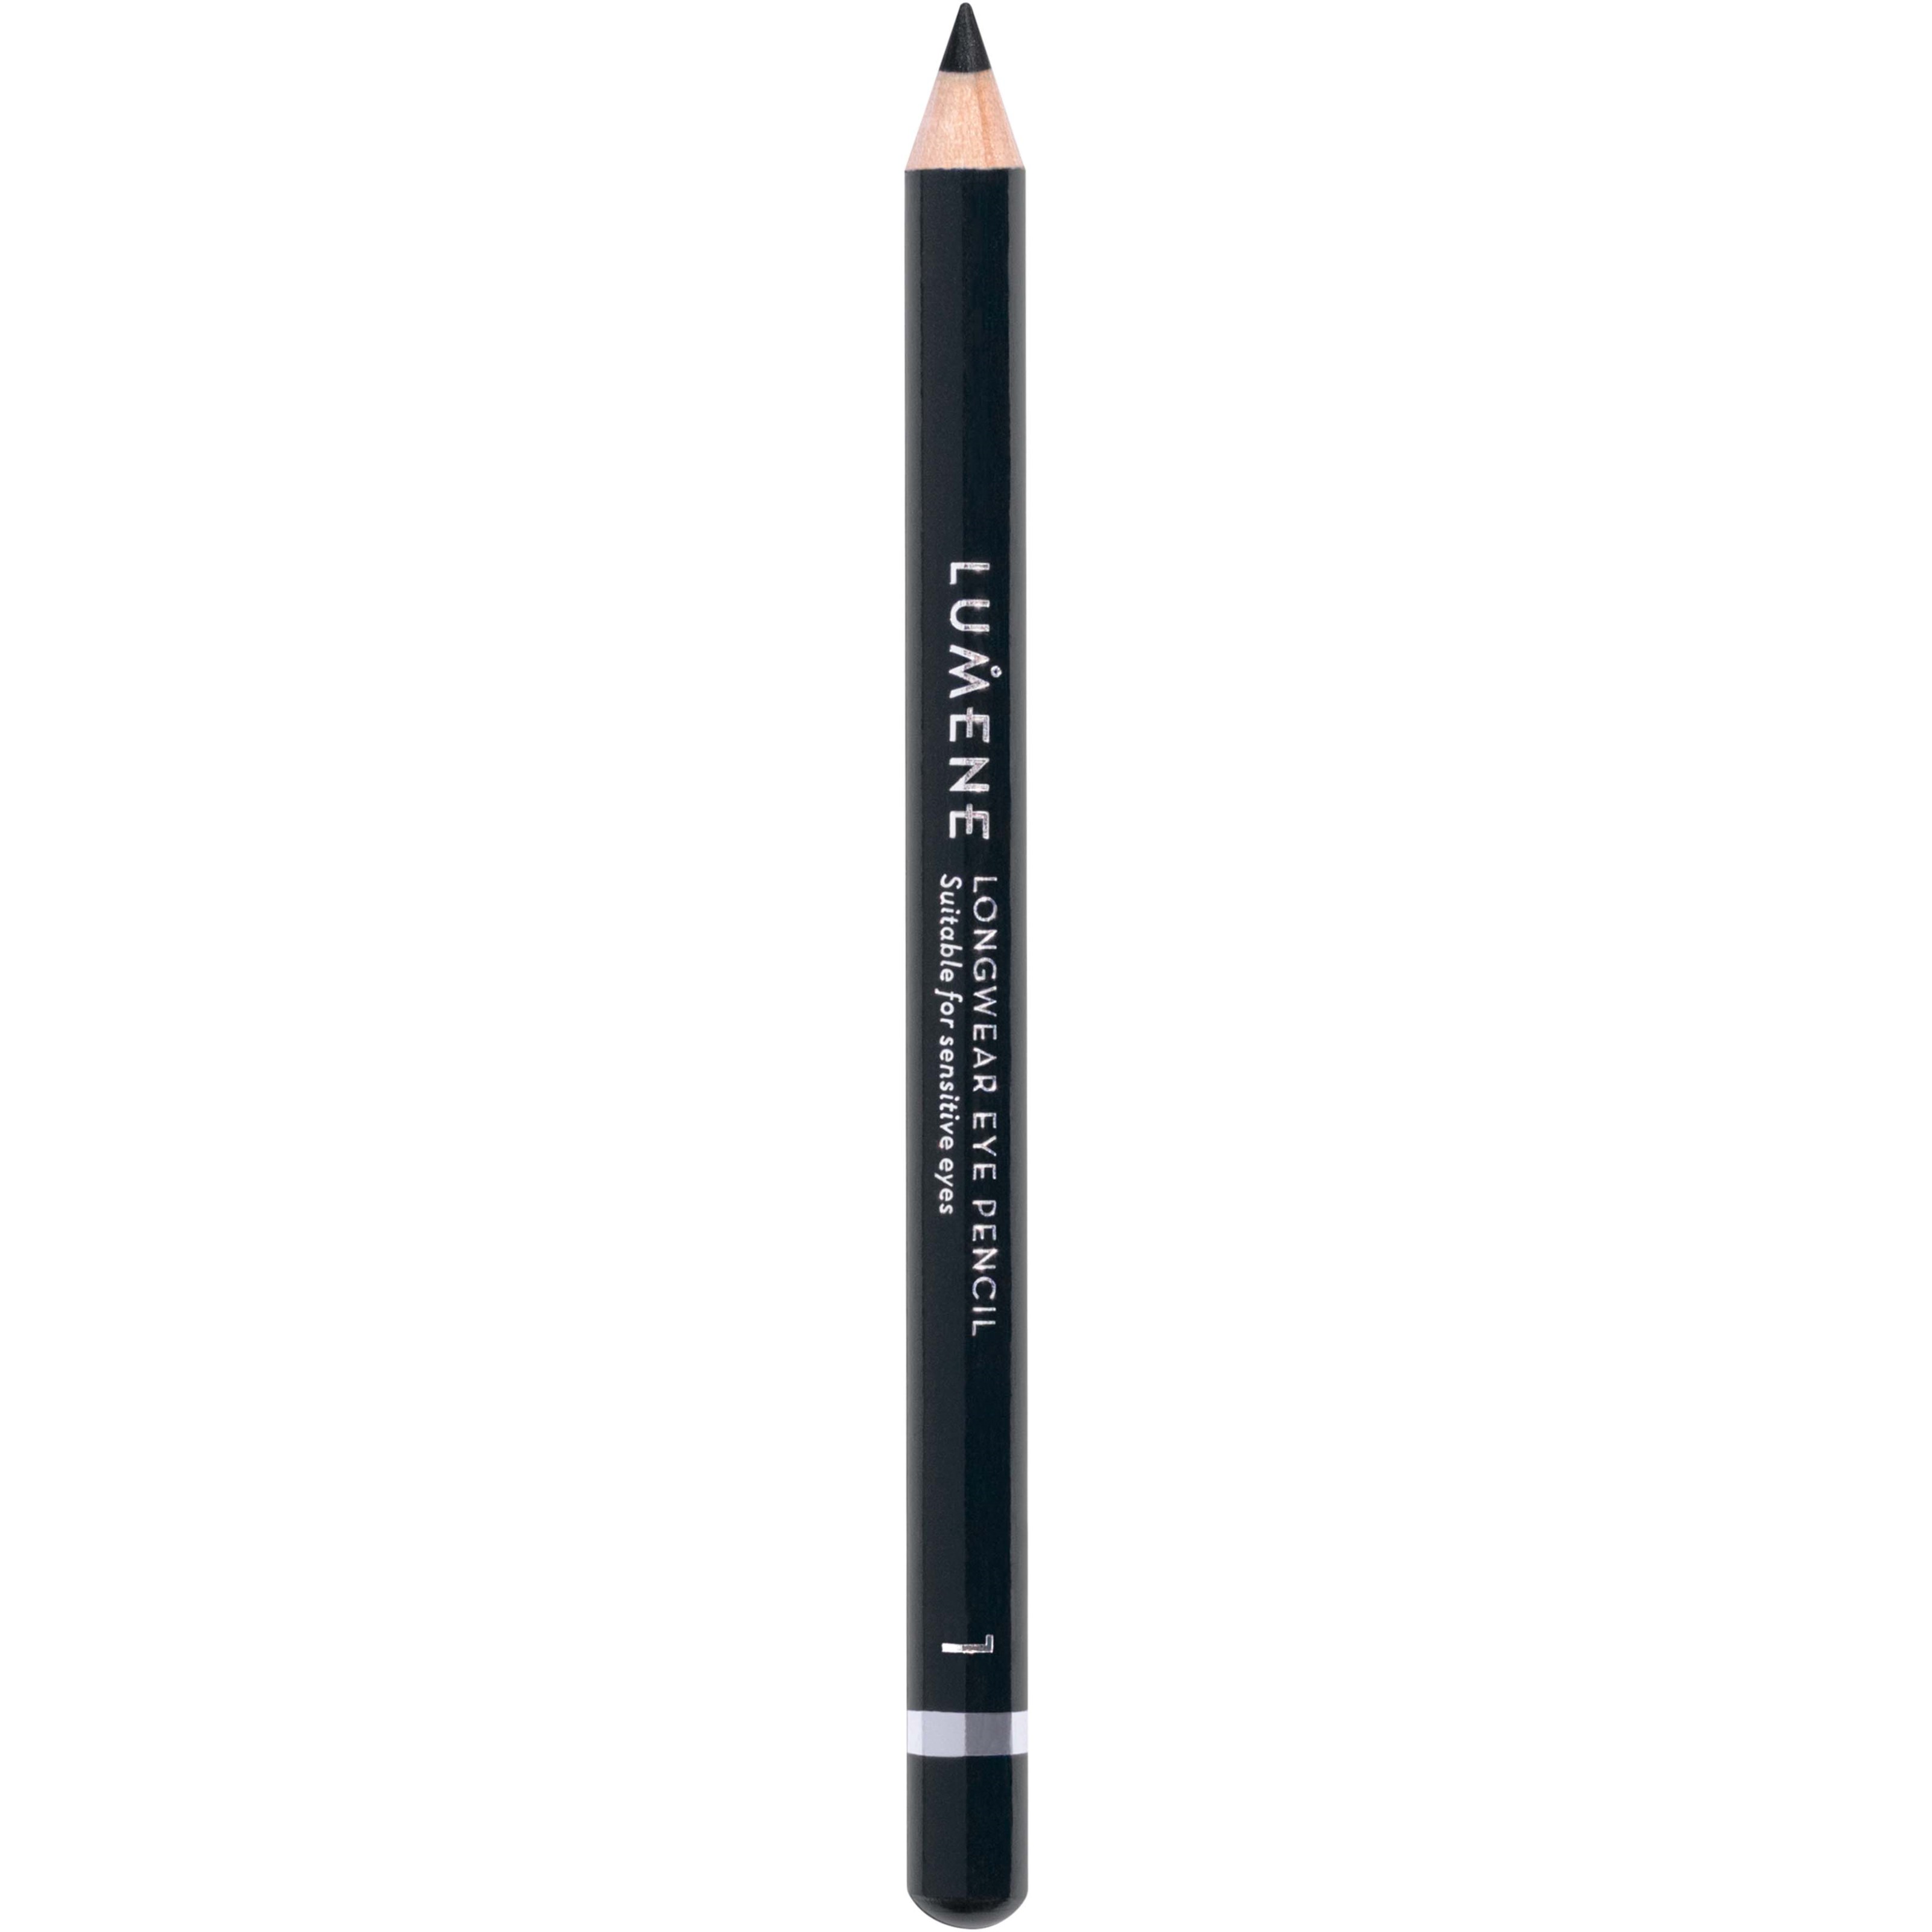 Lumene Longwear Eye Pencil 1 Black